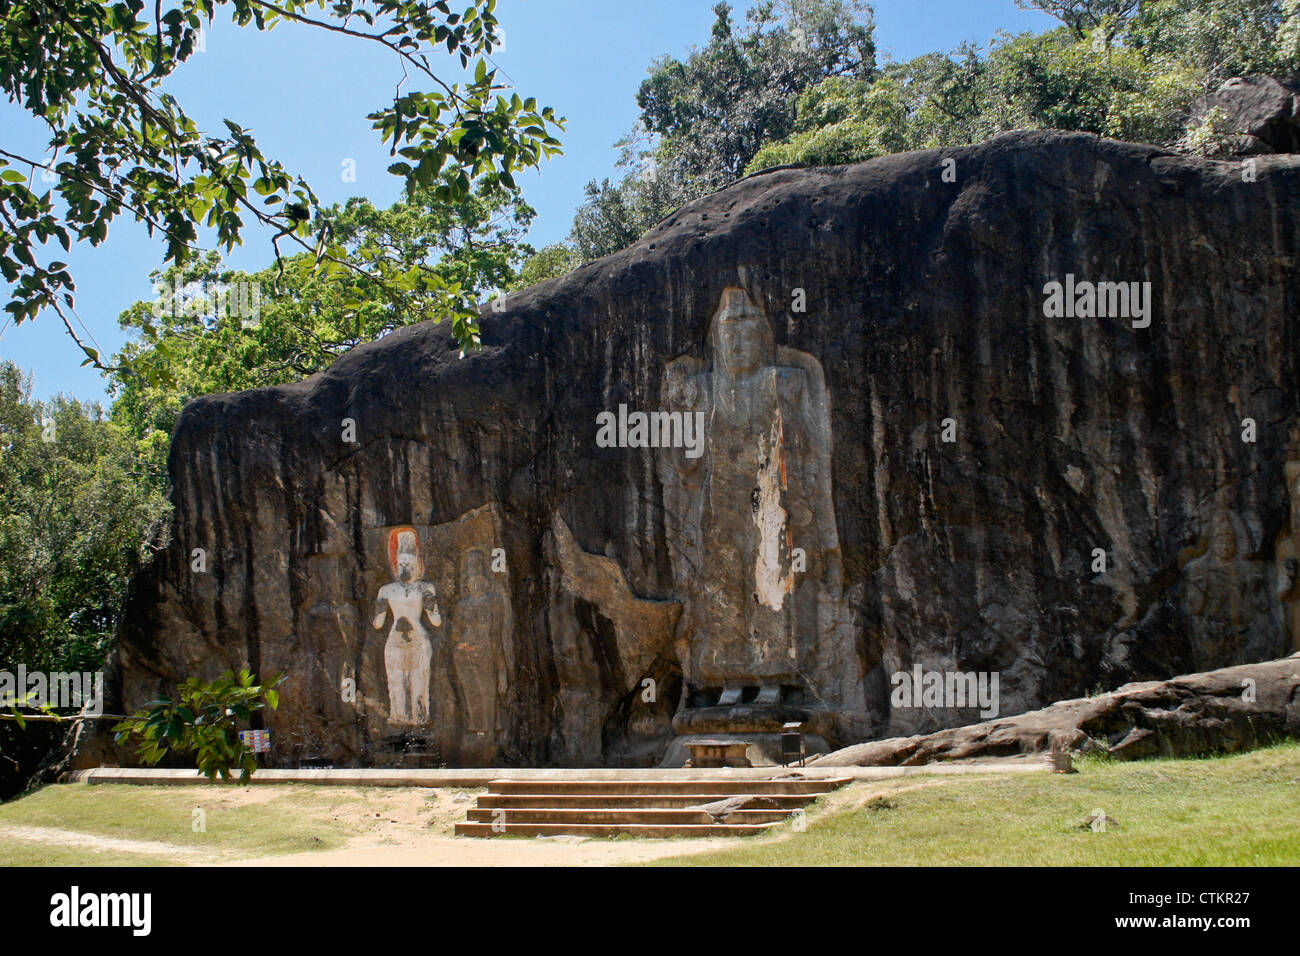 Rock-cut Buddha figures at Buduruwagala, Sri Lanka Stock Photo